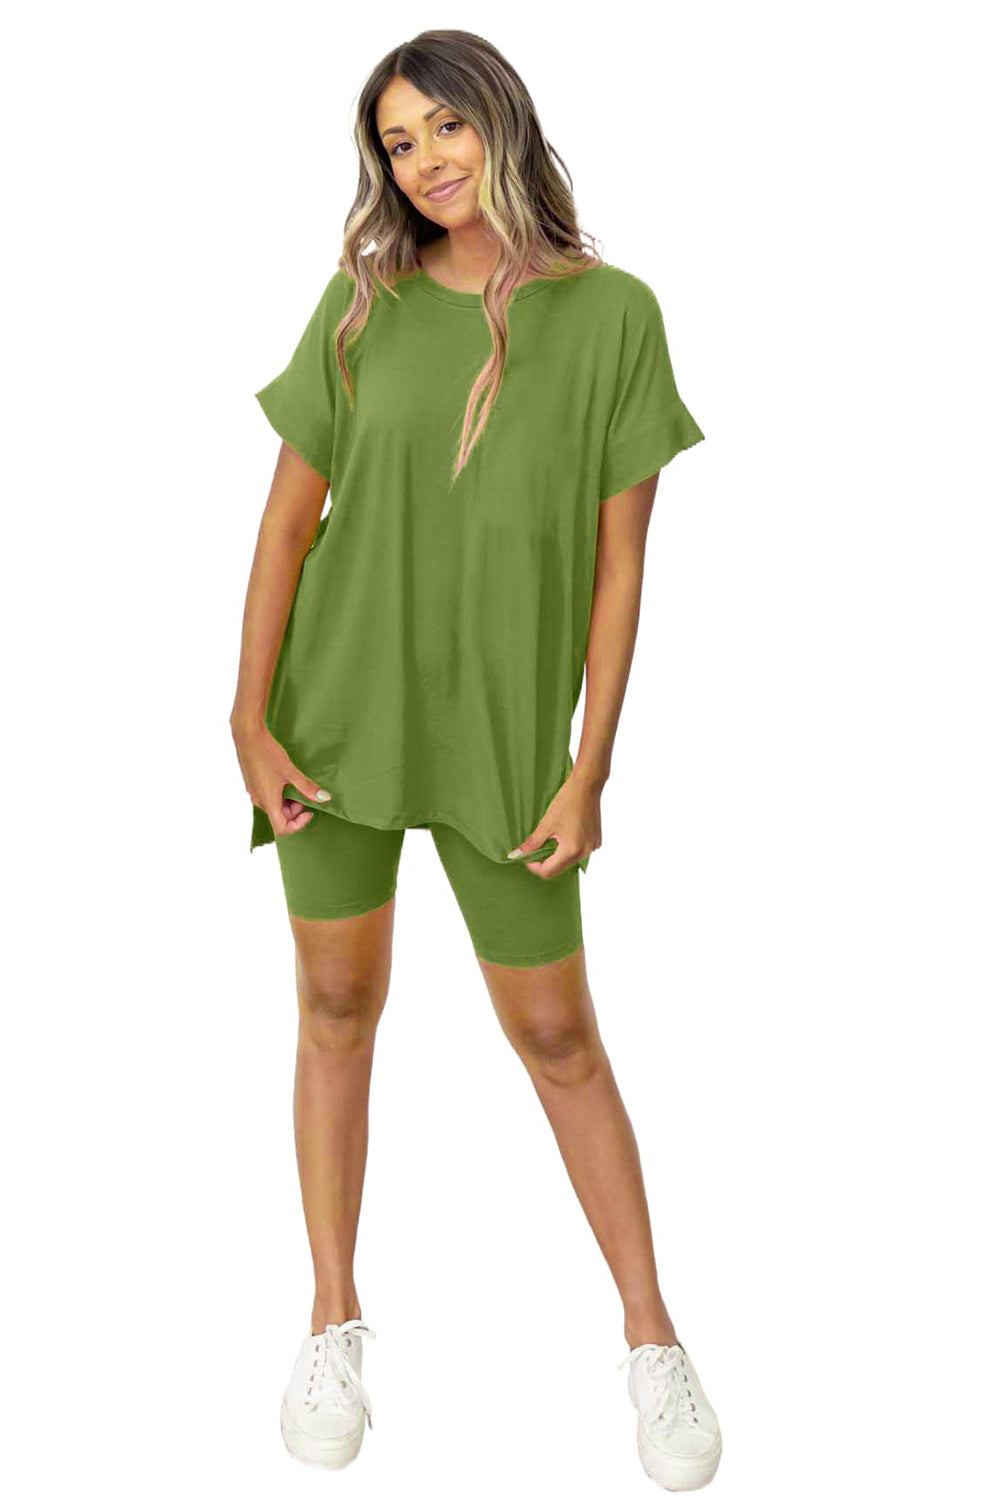 Komplet majice s tuniko in oprijetimi kratkimi hlačami špinačno zelene barve z enobarvnim razcepljenim robom